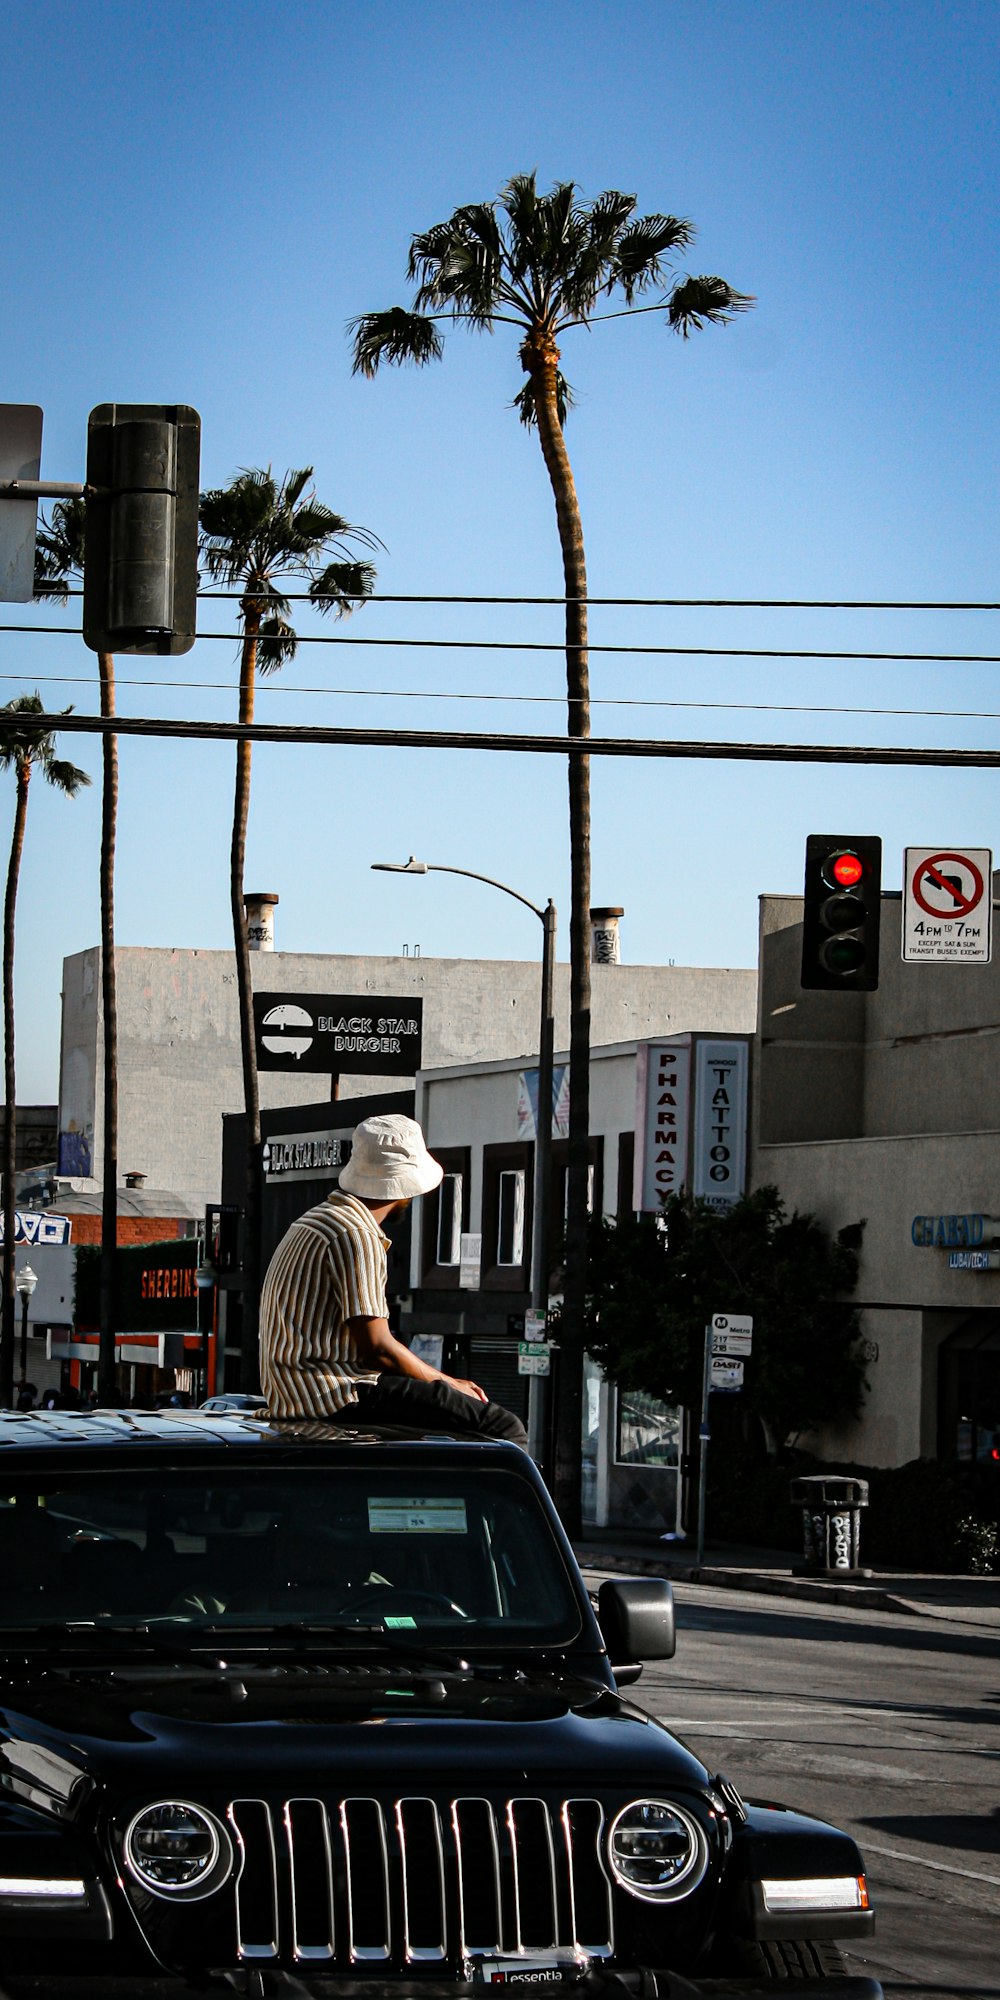 homem em camisa de listras brancas e pretas e chapéu marrom sentado na calçada durante o dia